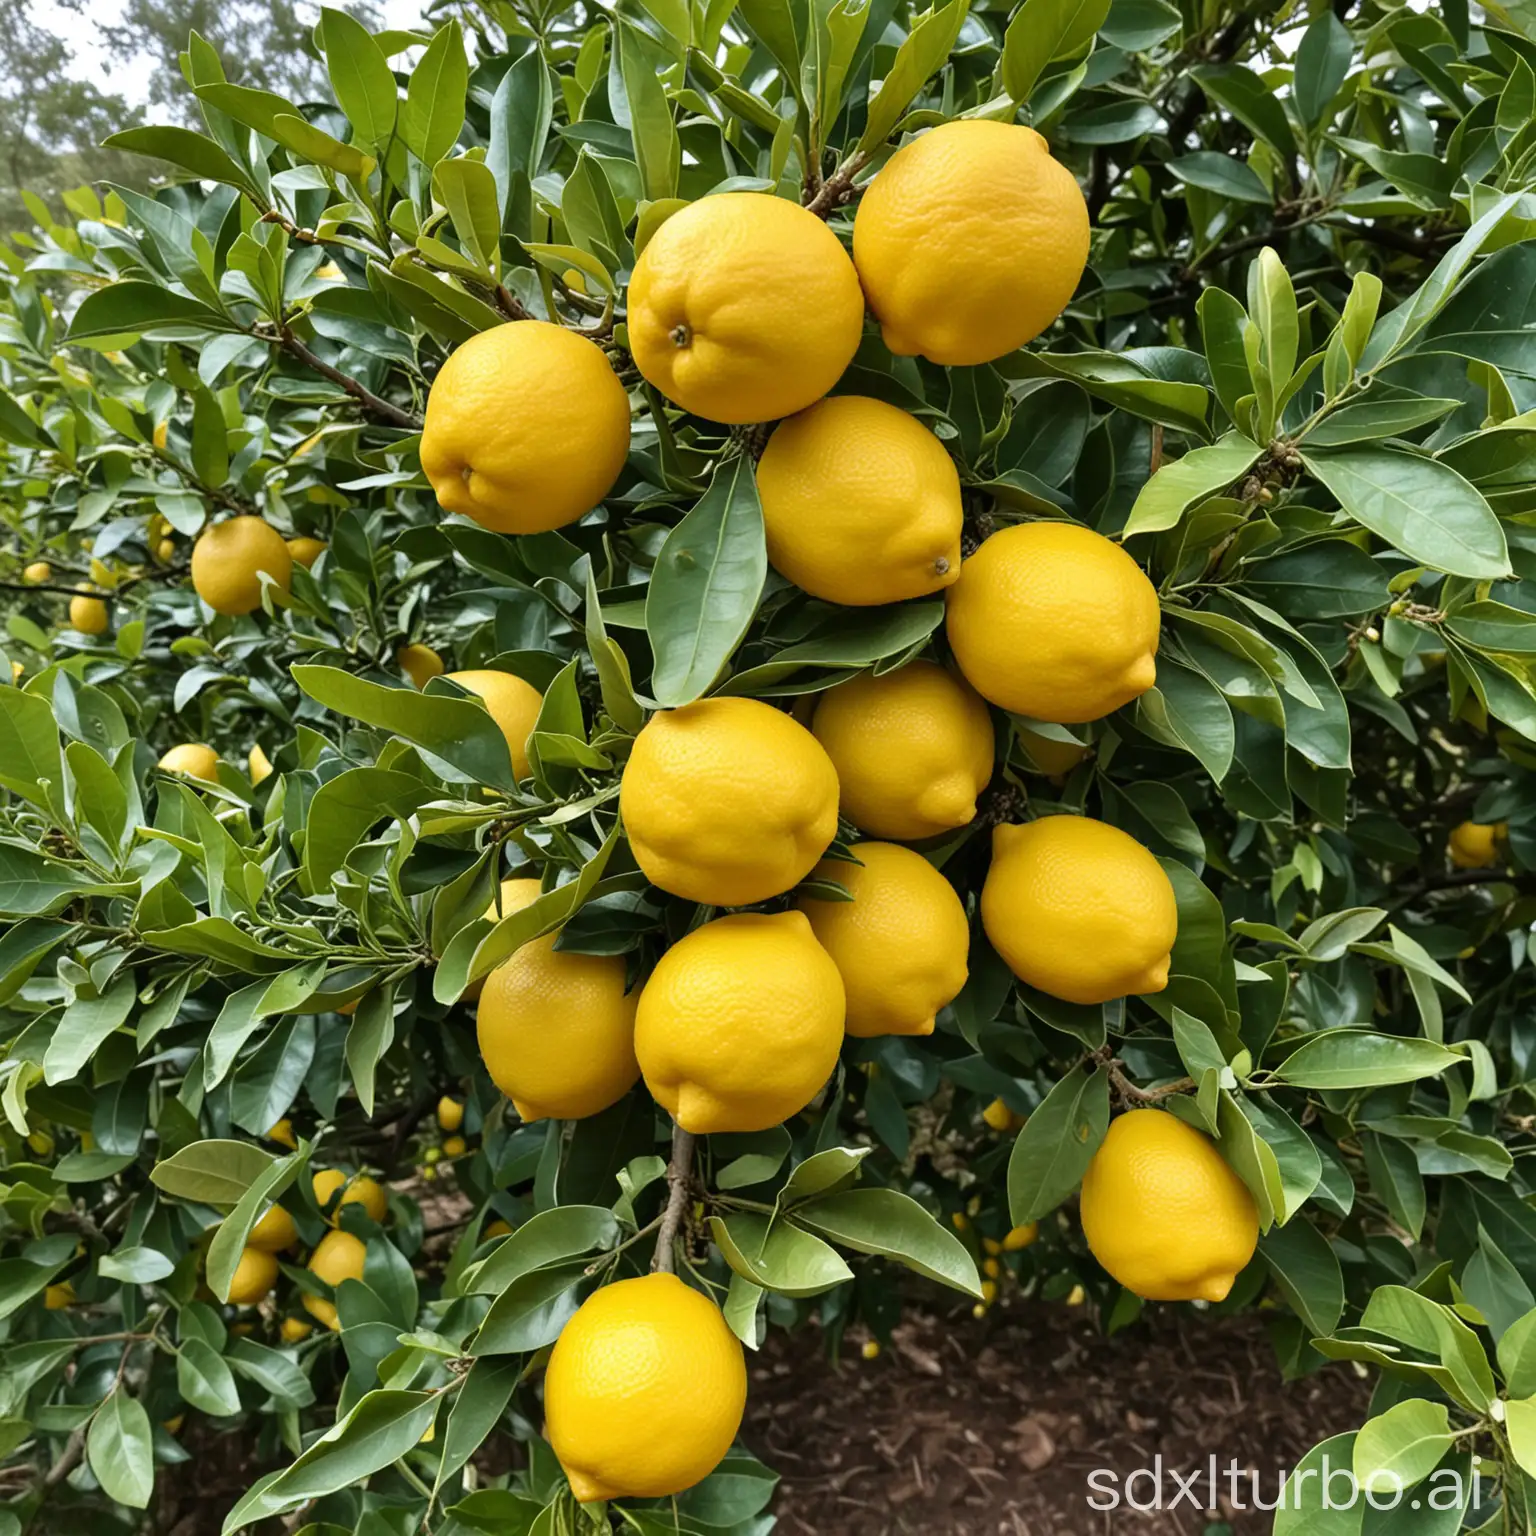 lemons on tree